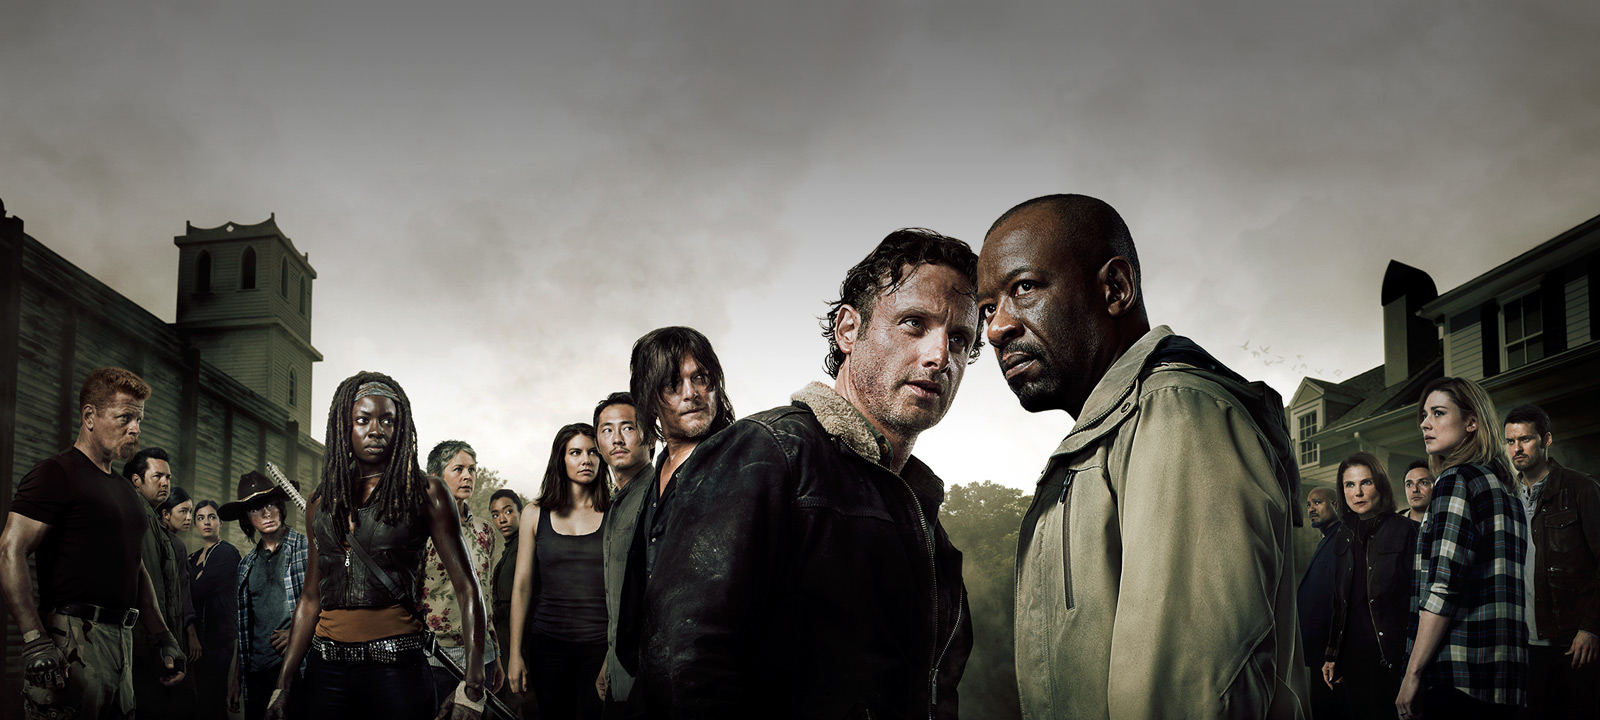 Presentaron el primer avance de la nueva temporada de The Walking Dead